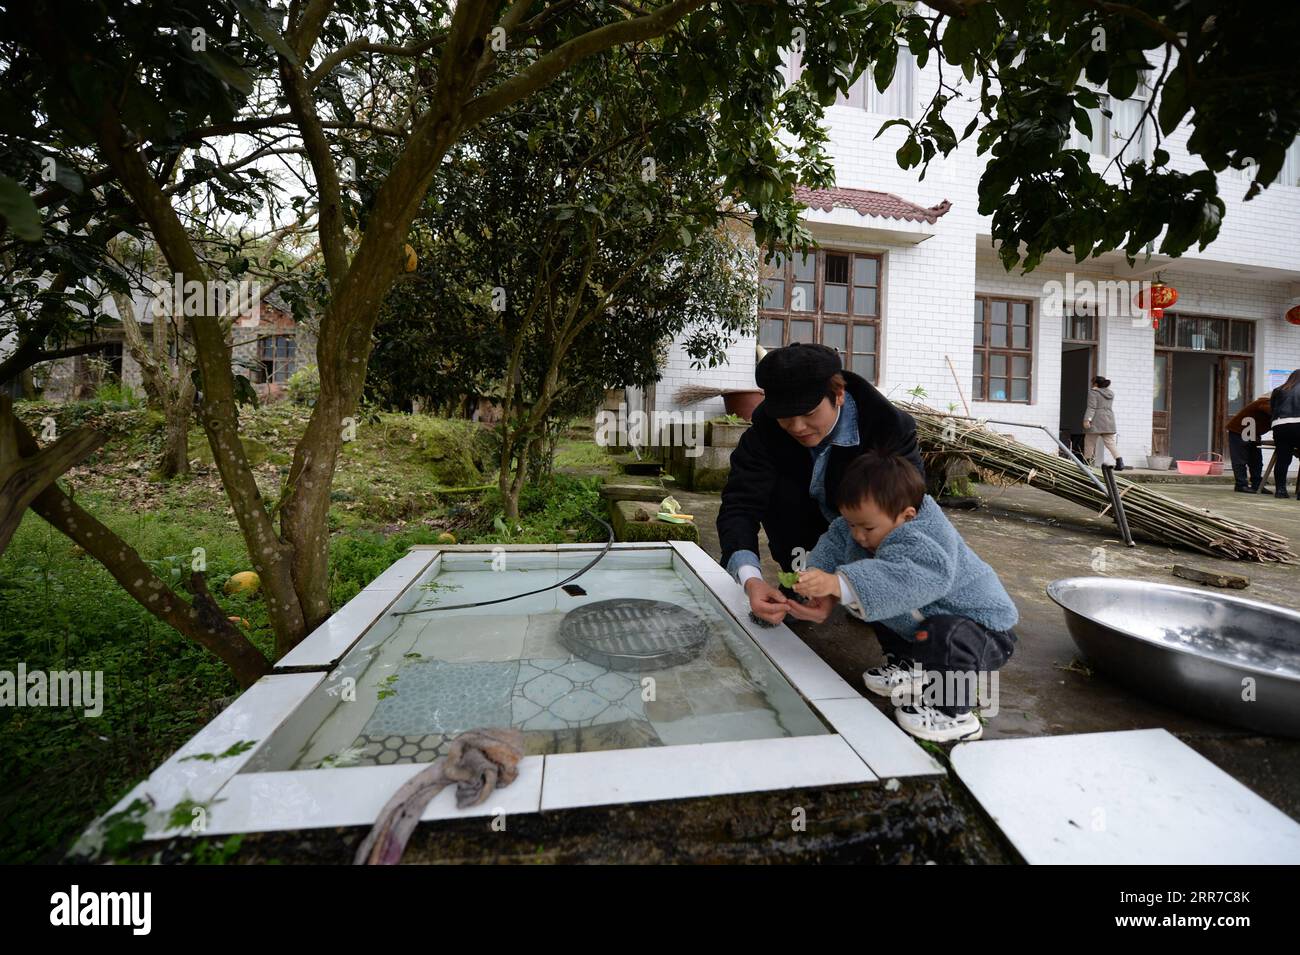 210325 -- ZHANGJIAJIE, 25. März 2021 -- Zhuo Yihang spielt mit seinem Sohn zu Hause im Cili County, Provinz Hunan, im Zentrum Chinas, 20. März 2021. Zhuo Yihang, 33, wurde im Cili County in der Provinz Hunan geboren. Derzeit betreibt er einen Friseurladen in Cili. Eines Tages im Mai 2020 sah Zhuo Yihang zwei alte Menschen, die sich am Straßenrand die Haare schnitten, sogar einer von ihnen blind, und so trat er voran und half. Er teilte diese Erfahrungen in den sozialen Medien und erhielt viele ermutigende Botschaften, weshalb er beschloss, älteren Menschen kostenlose Haarschnitte zu geben. Er besuchte Cili und andere abgelegene Dörfer in den umliegenden Grafschaften Stockfoto